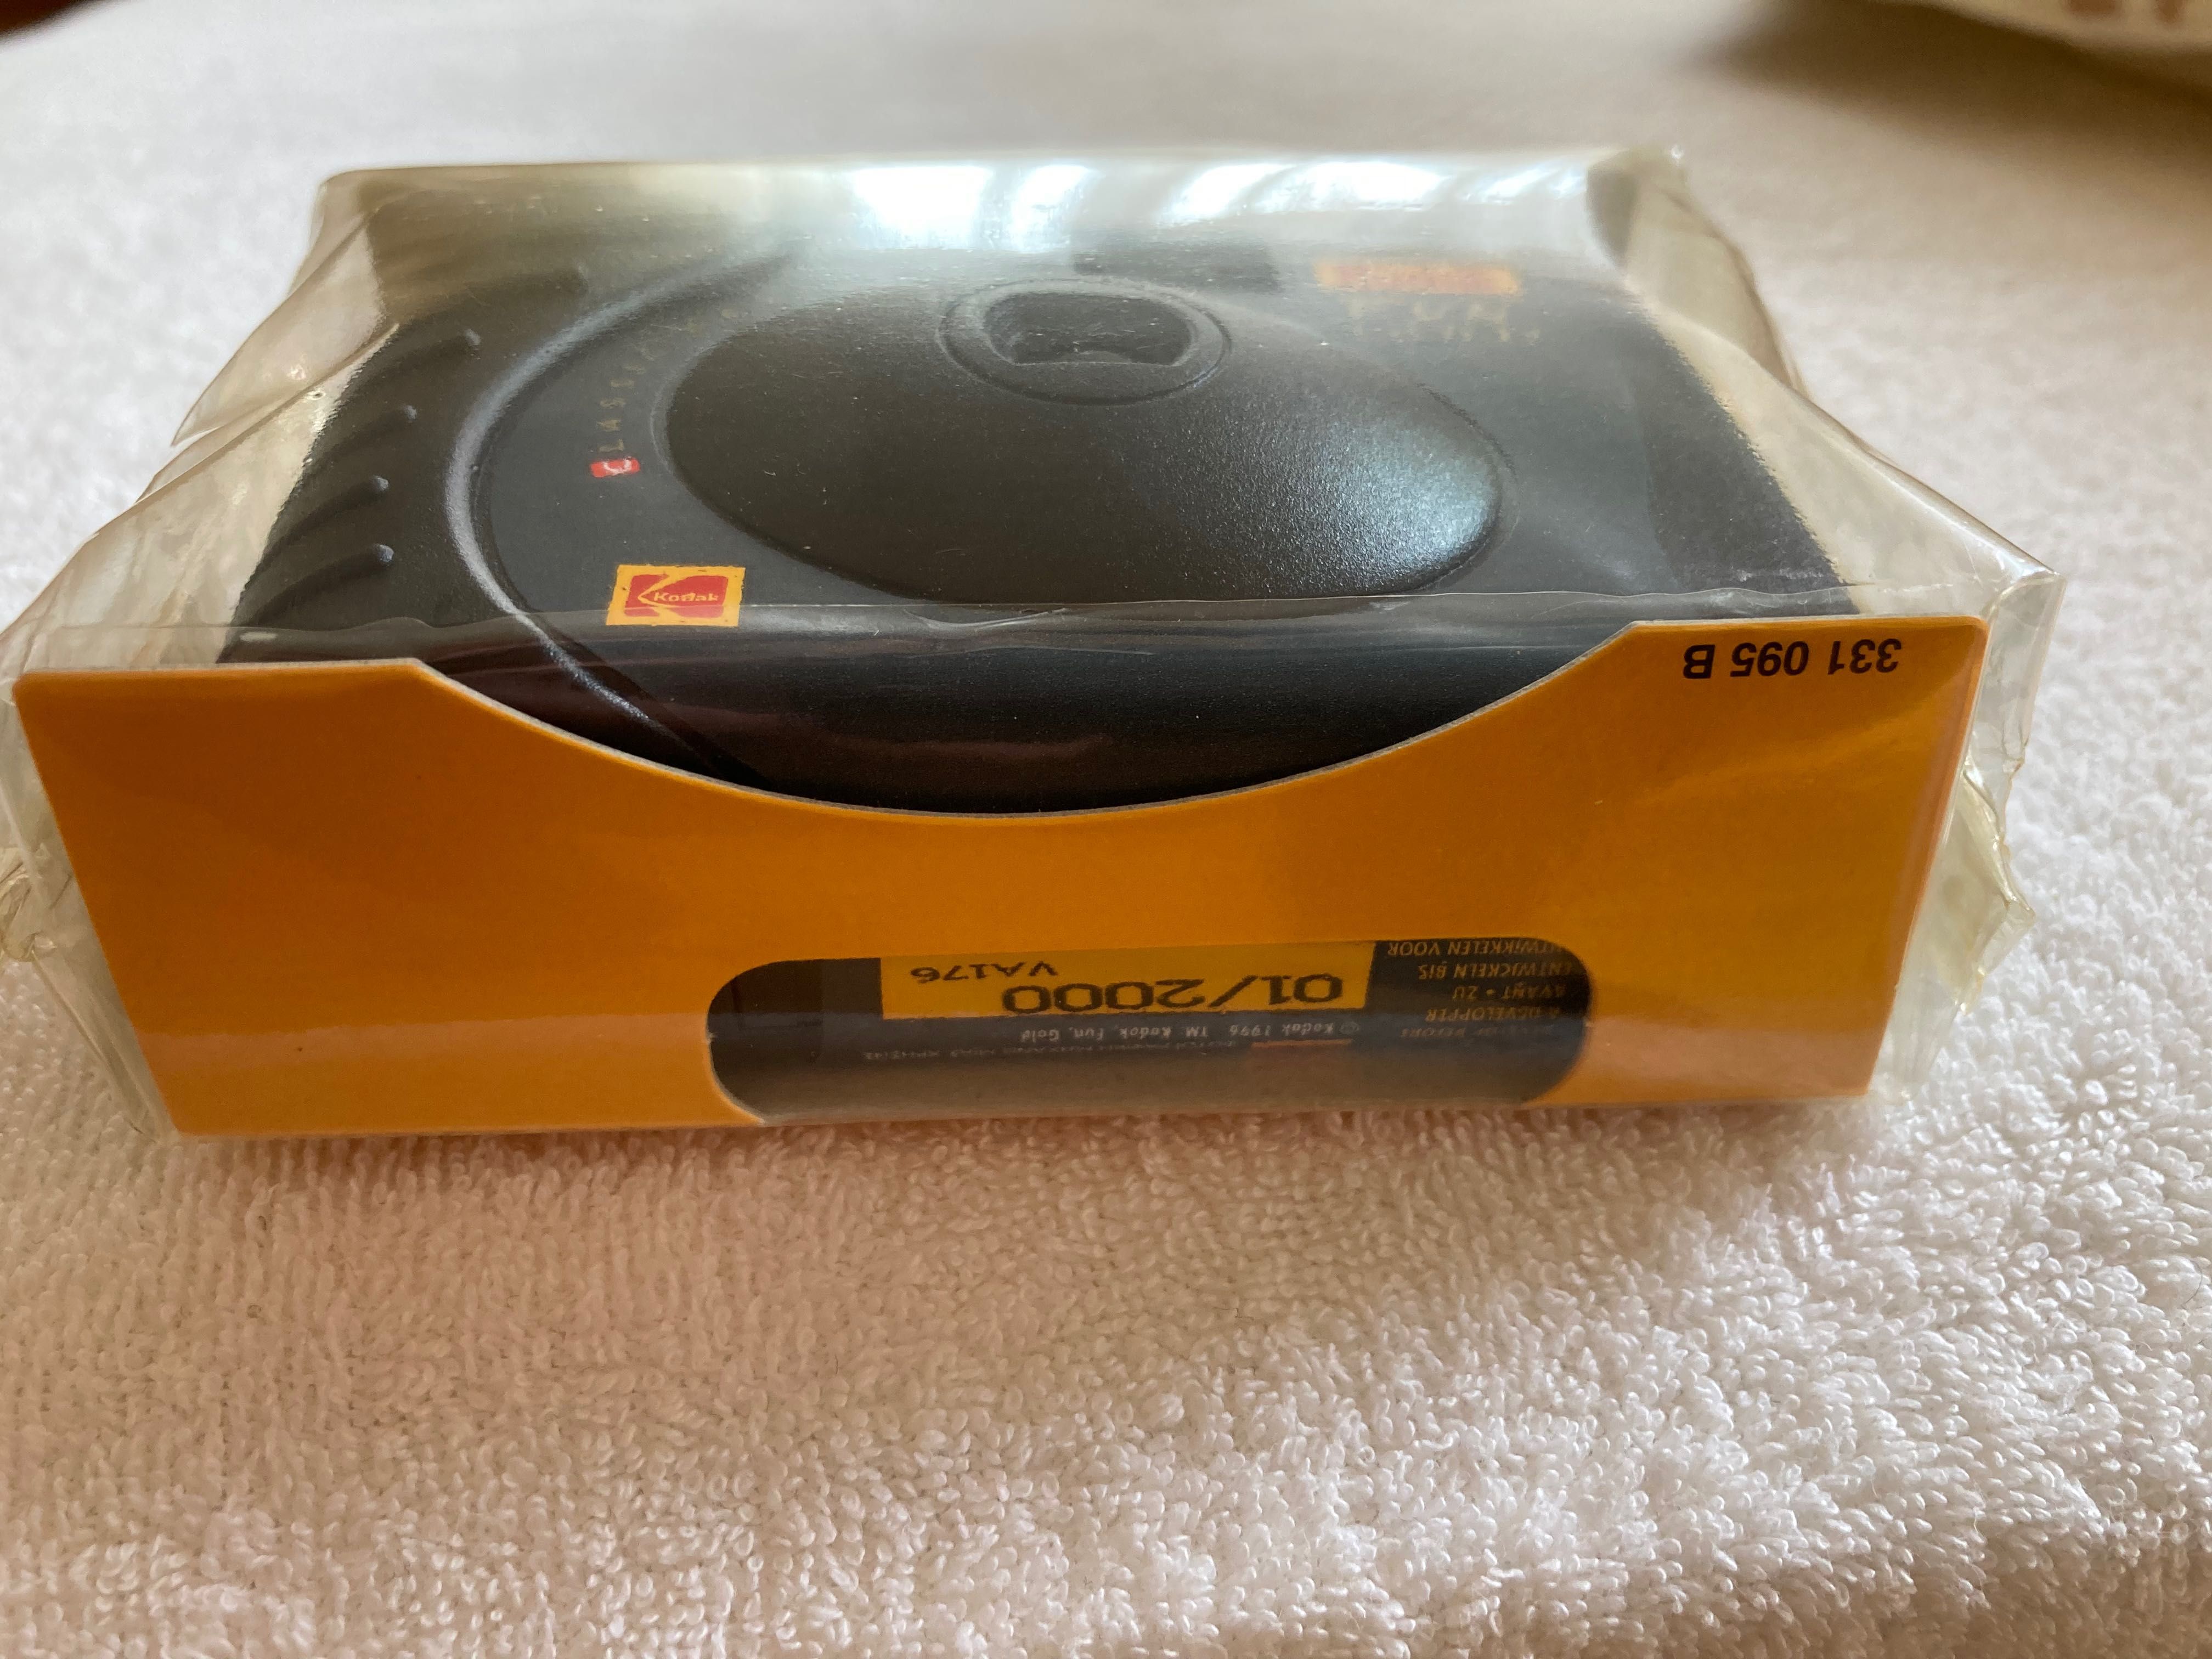 Kodak Fun Gold jednorazowy aparat